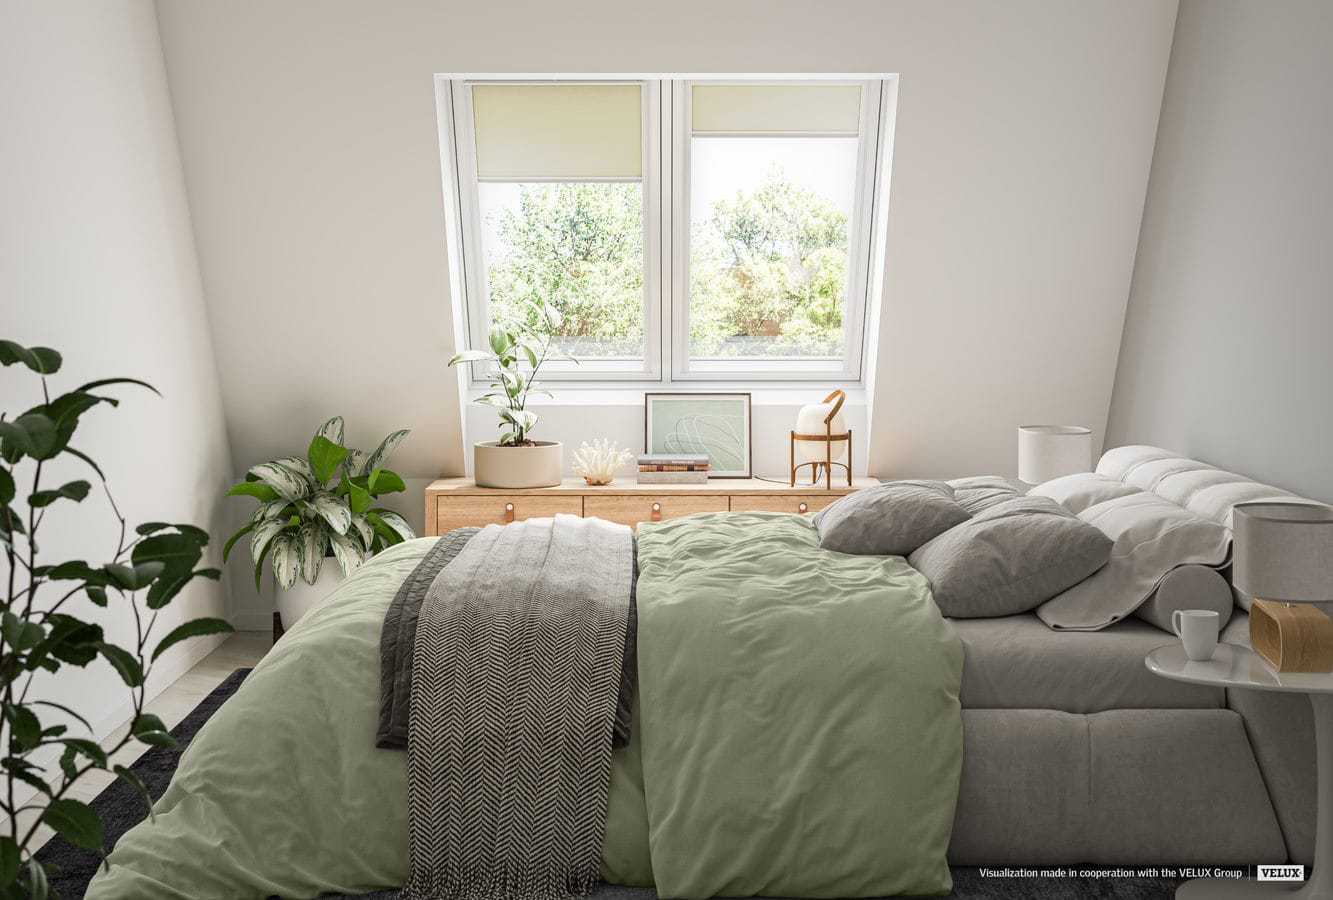 Chambre douillette avec fenêtre de toit VELUX, literie verte, plantes et décoration minimaliste.